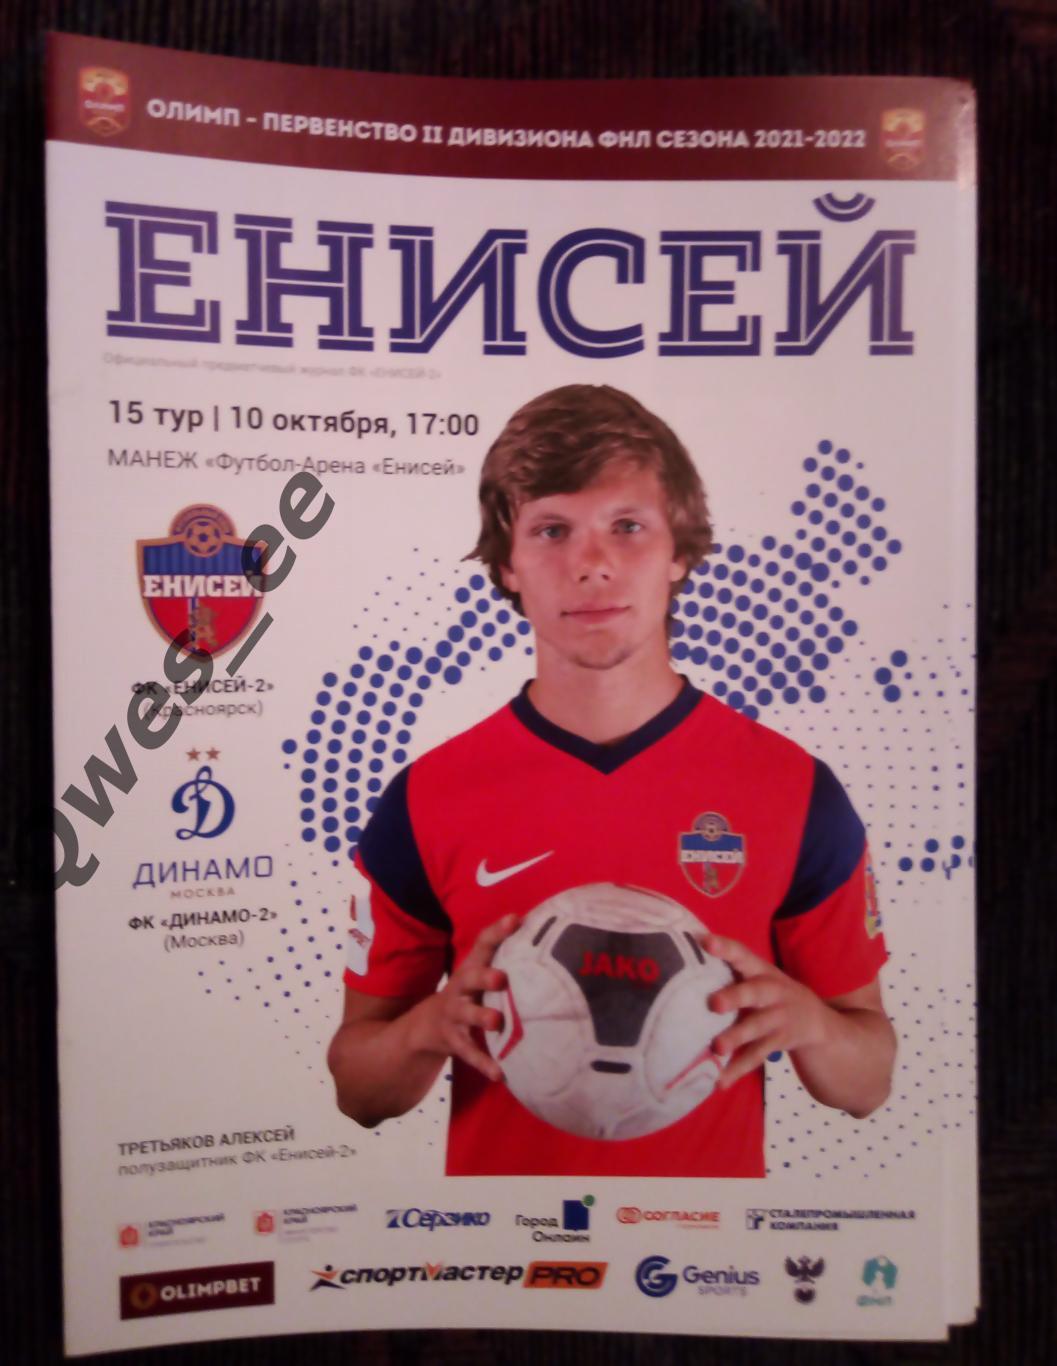 Енисей 2 Красноярск - Динамо 2 Москва 10 октября 2021